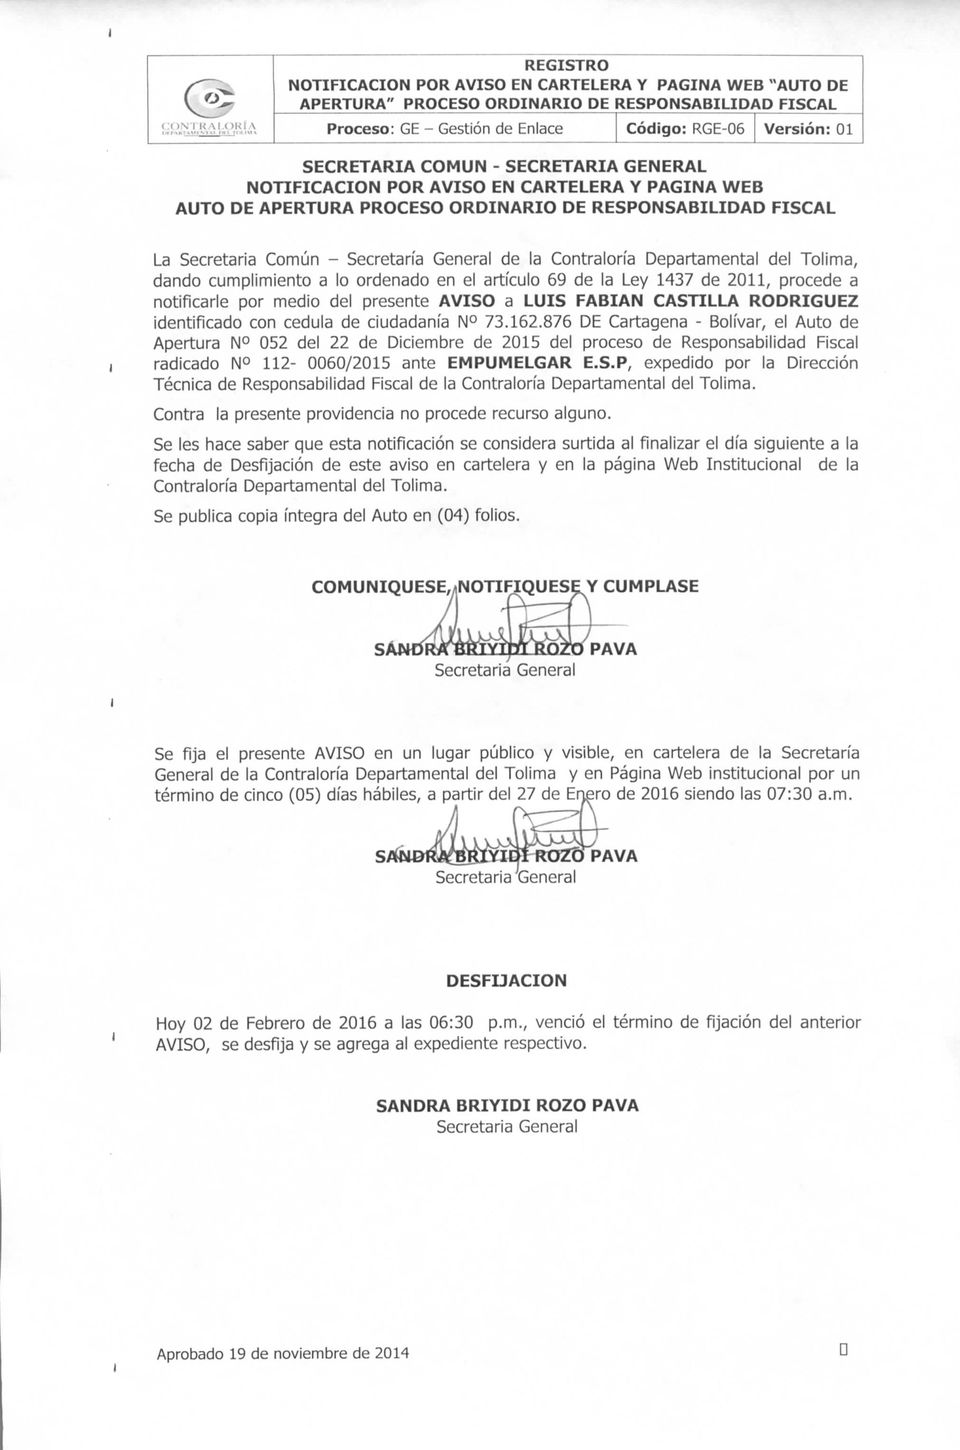 Departamental del Tolima, dando cumplimiento a lo ordenado en el artículo 69 de la Ley 1437 de 2011, procede a notificarle por medio del presente AVISO a LUIS FABIÁN CASTILLA RODRÍGUEZ identificado